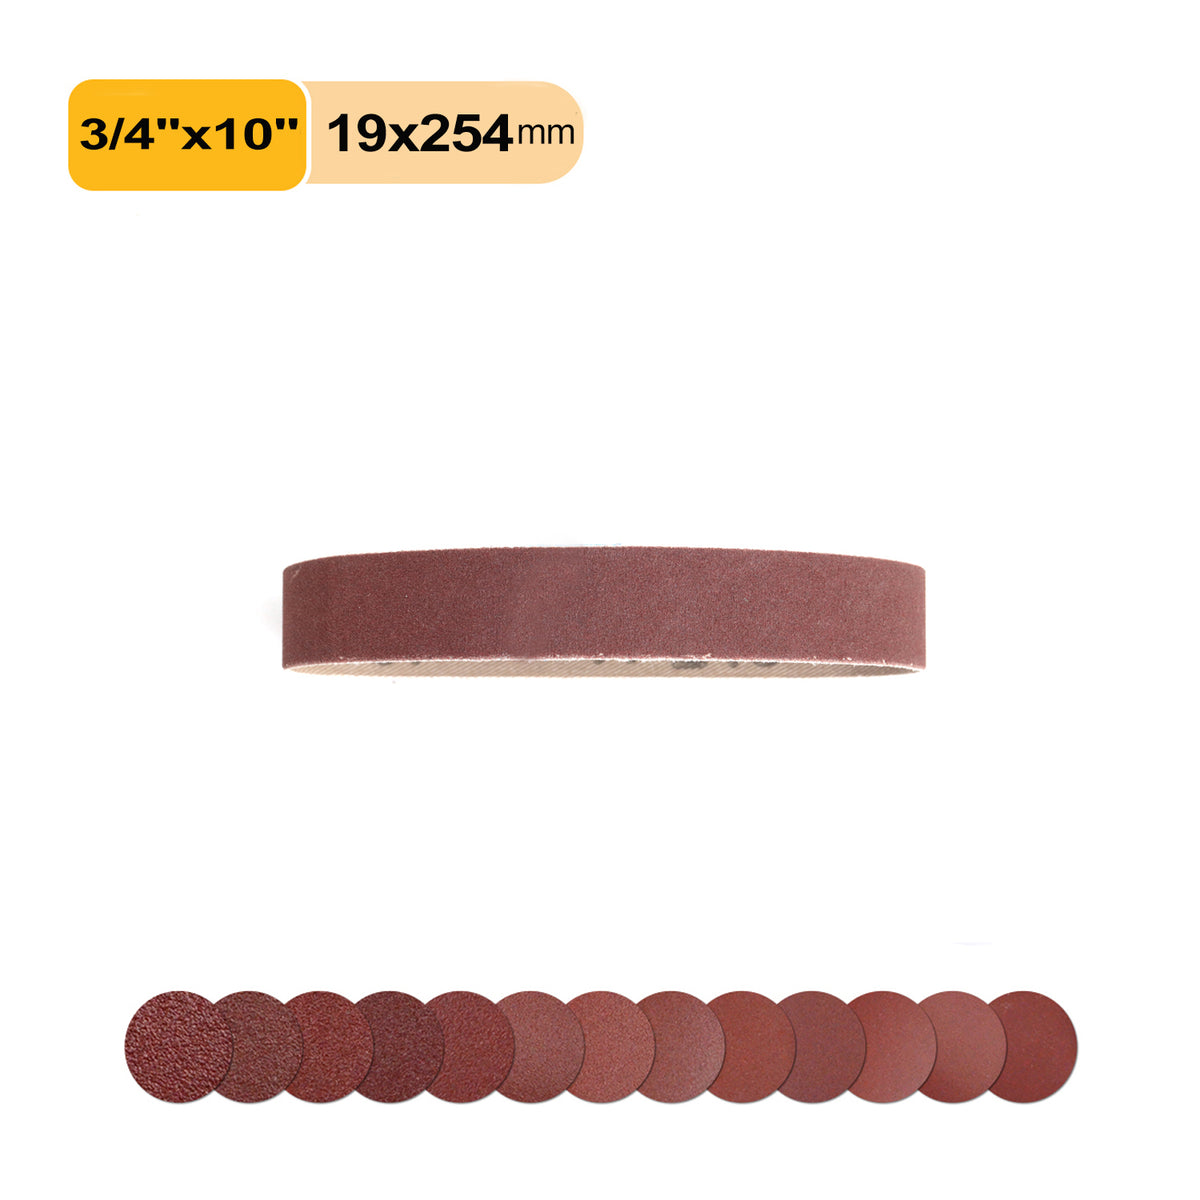 3/4" x 10" (19x254mm) Aluminum Oxide A/O Sanding Belts , 1 PC